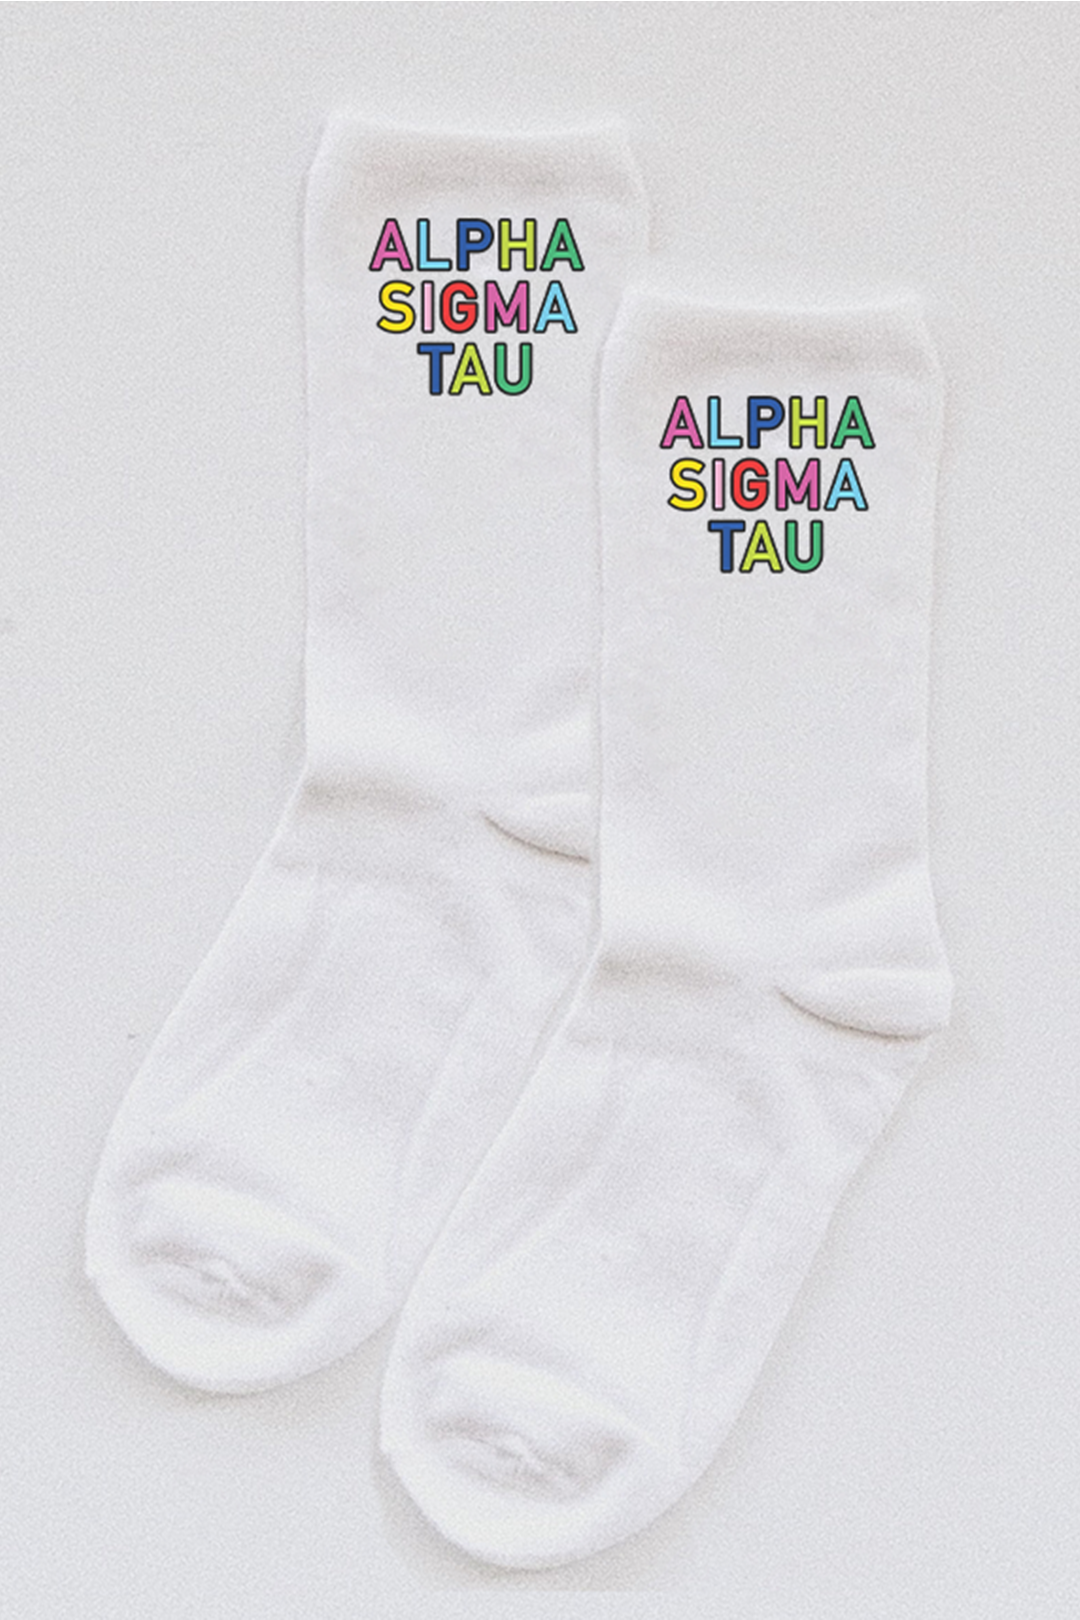 Colorful socks - Alpha Sigma Tau